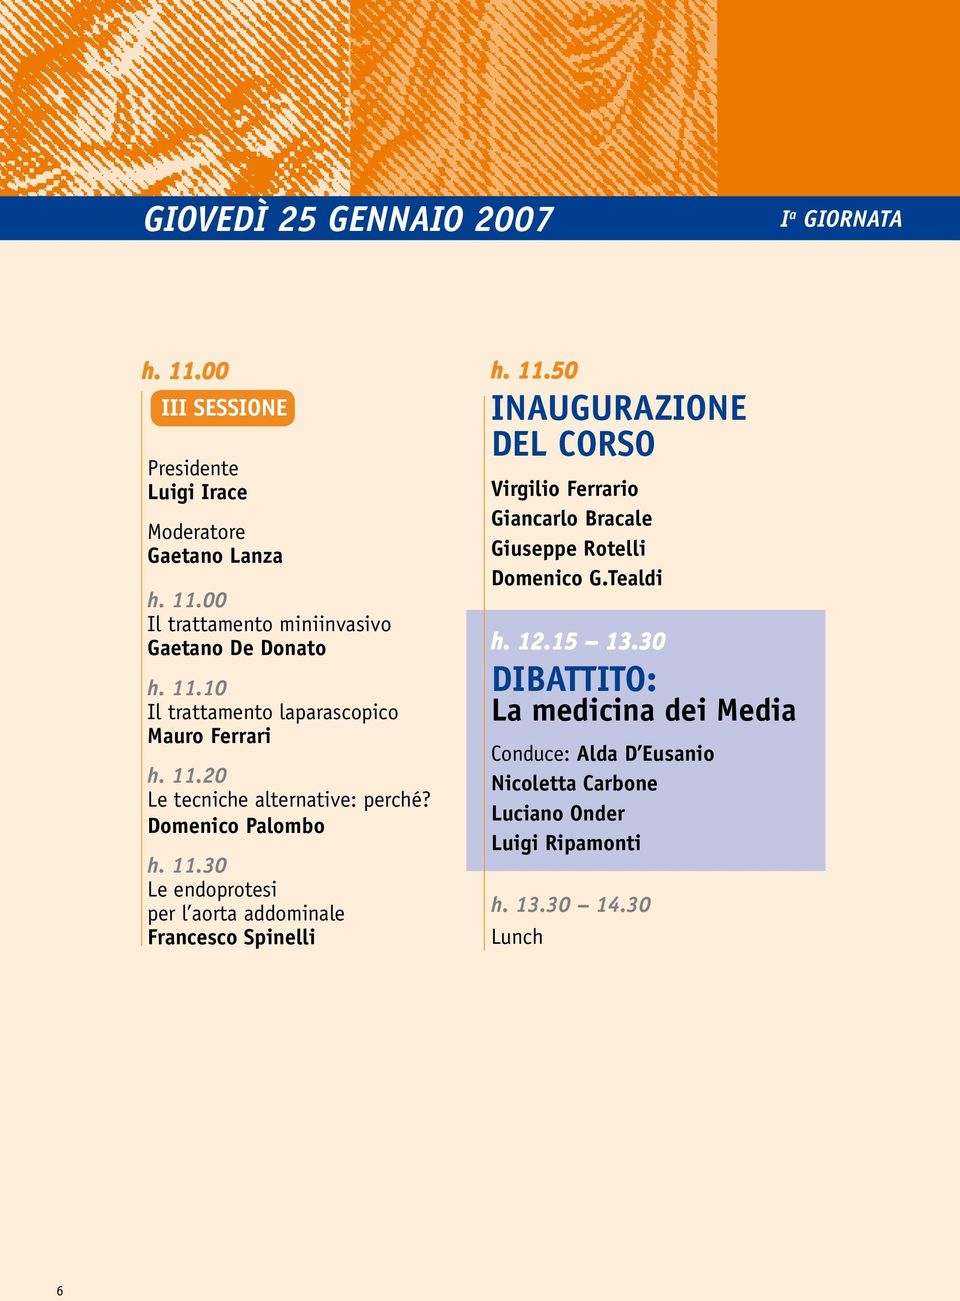 11.50 INAUGURAZIONE DEL CORSO Virgilio Ferrario Giancarlo Bracale Giuseppe Rotelli Domenico G.Tealdi h. 12.15 13.